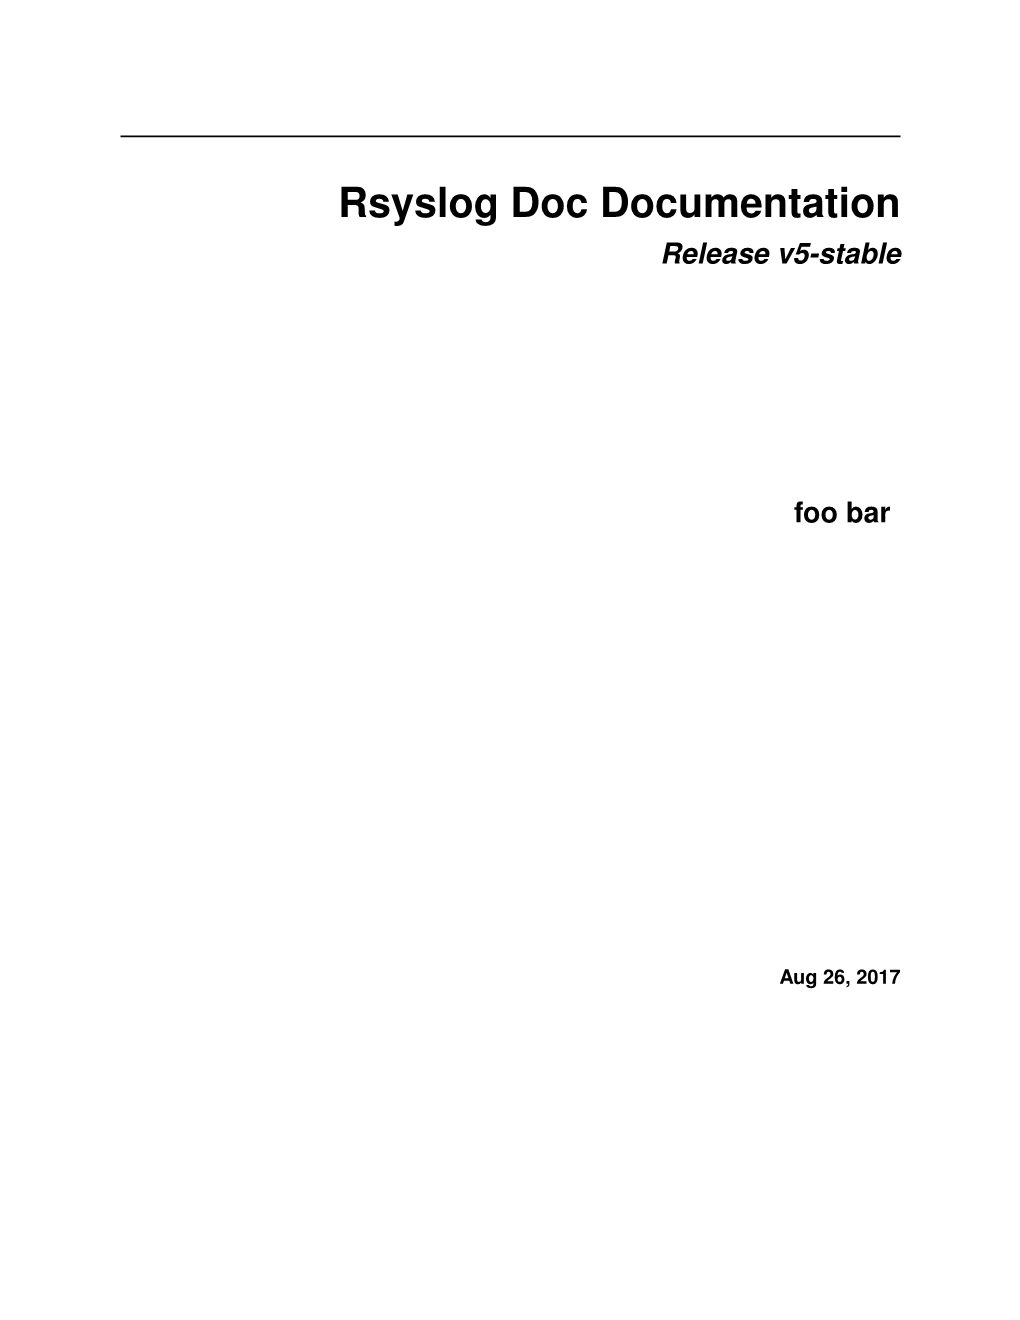 Rsyslog Doc Documentation Release V5-Stable